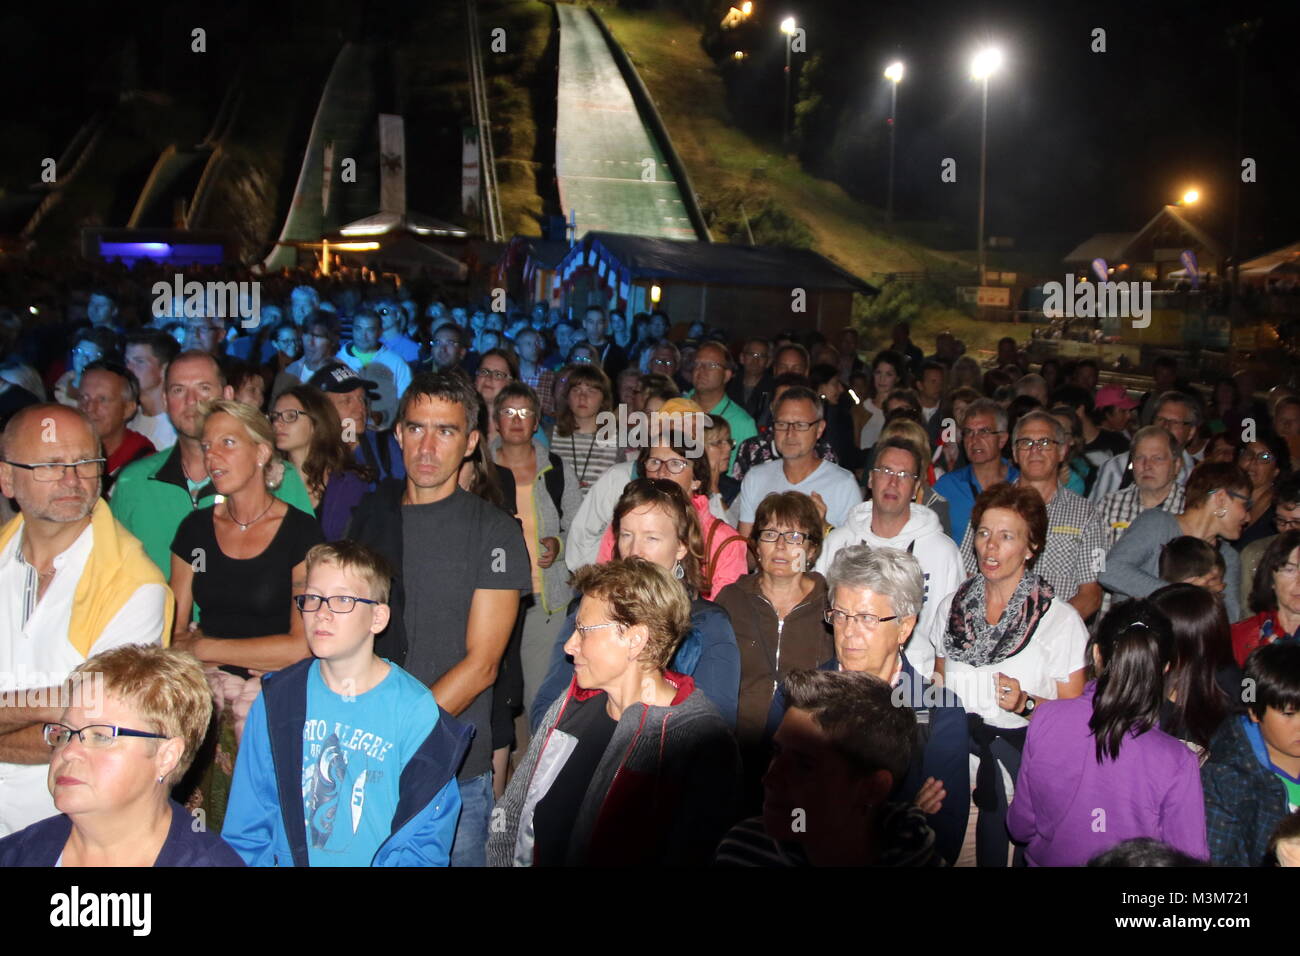 Hören, staunen und genießen - die Skisprungfans an der Adlerschanze bei der Open Air Show "ABBA' Foto Stock